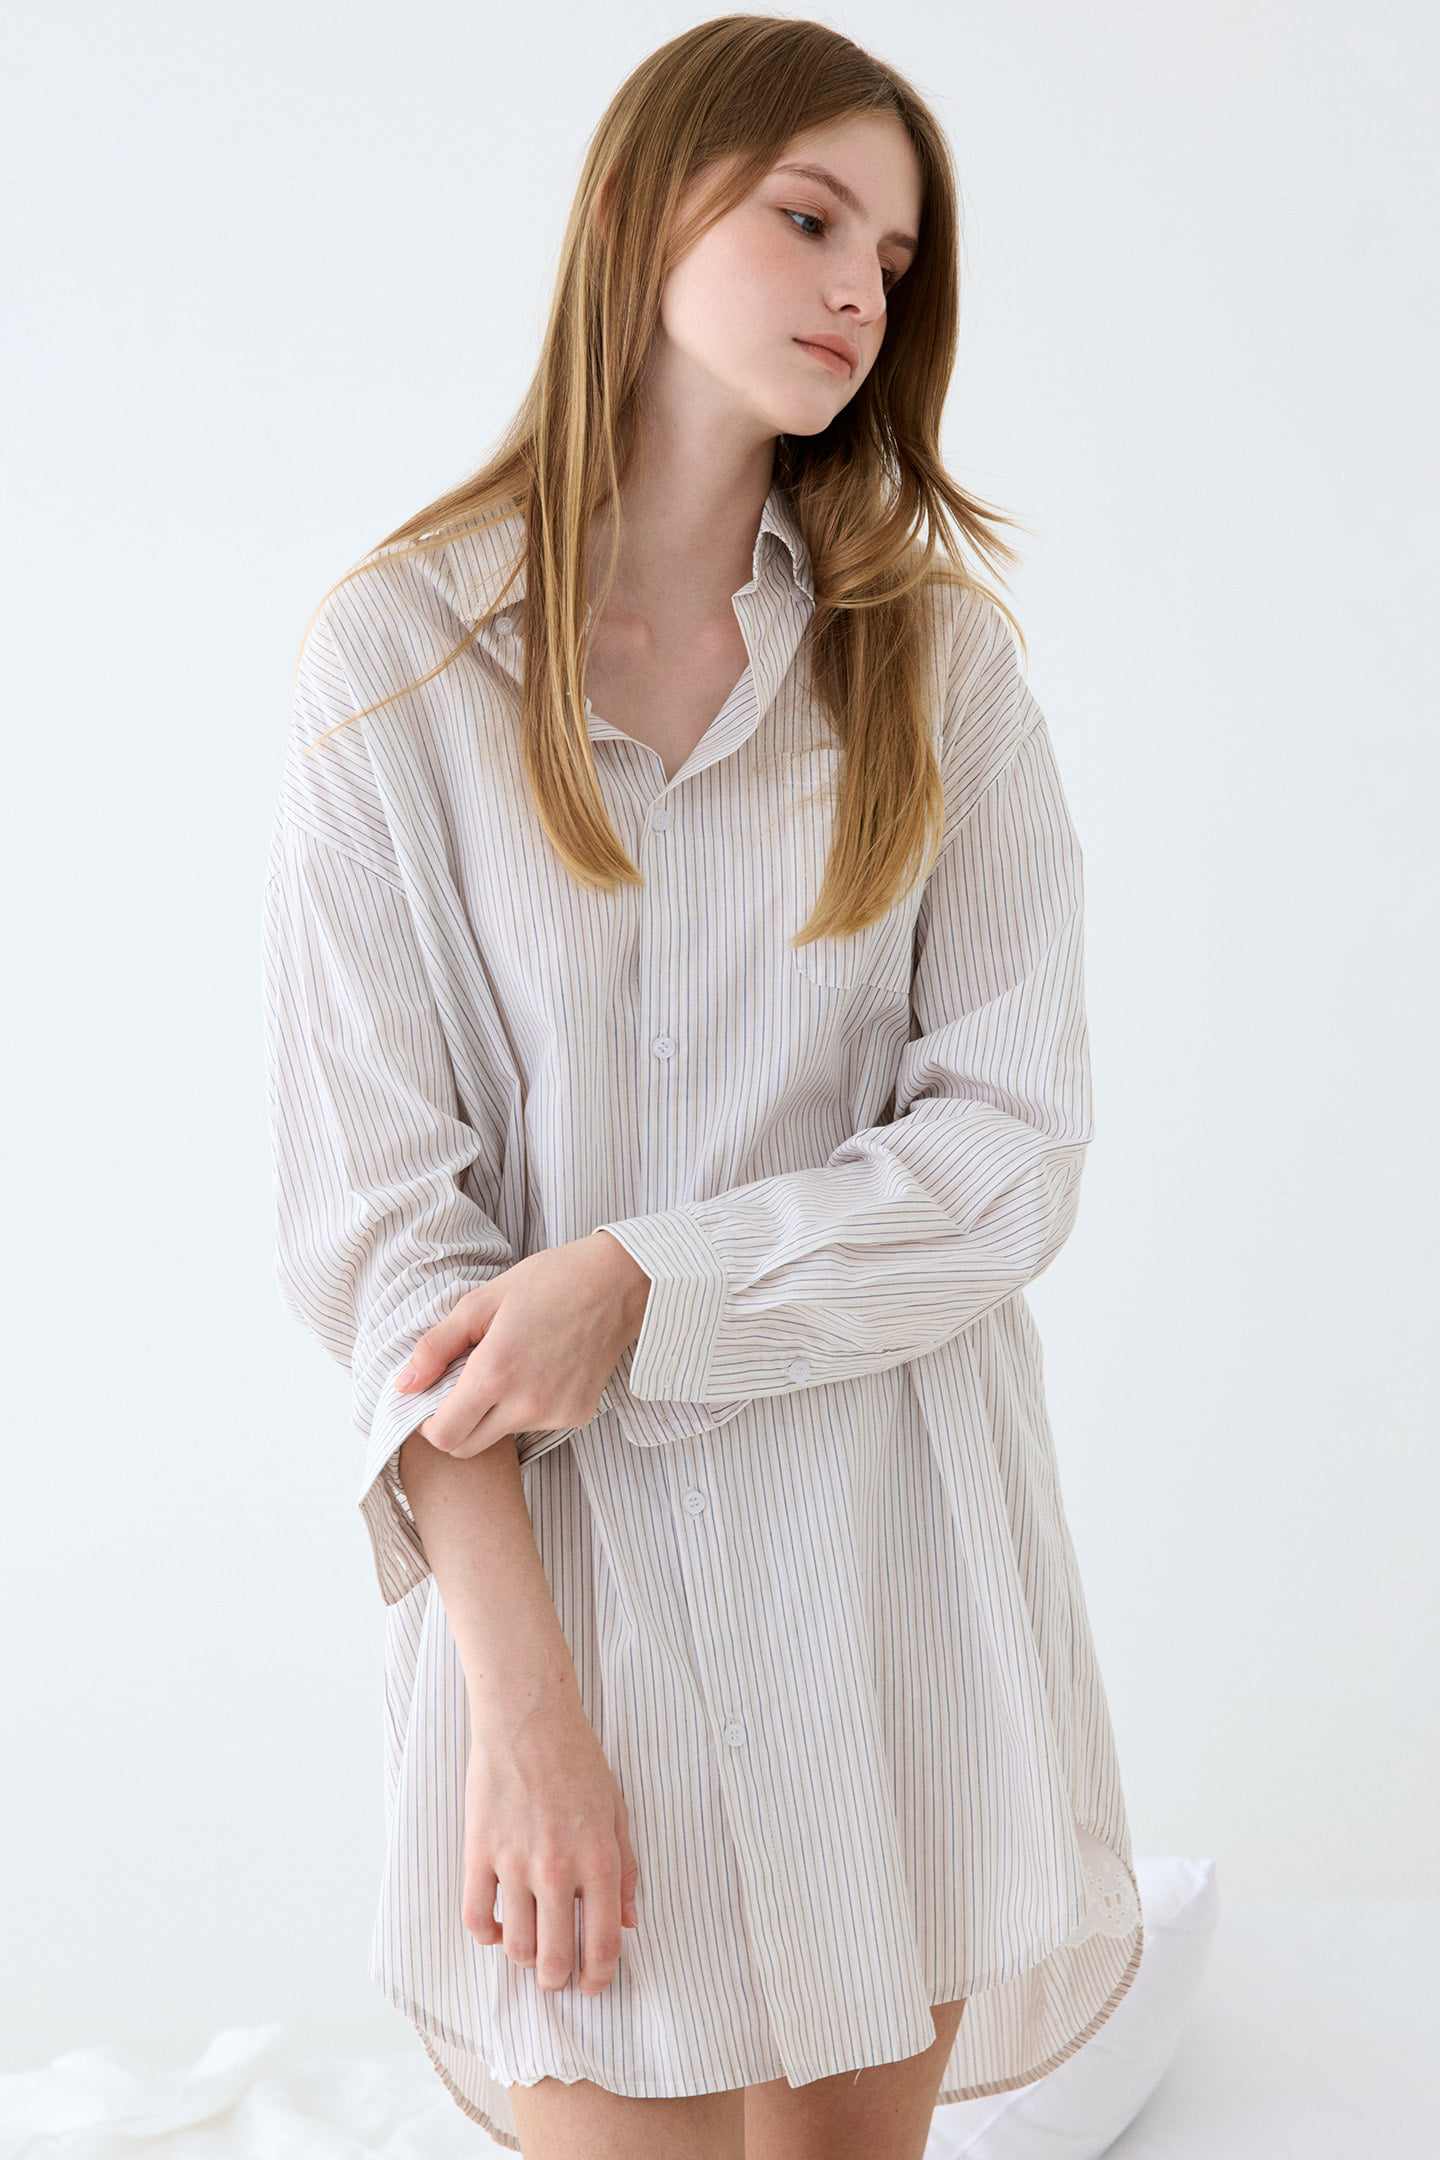 리콘 스트라이프 여성 홈웨어 셔츠 원피스 잠옷 파자마